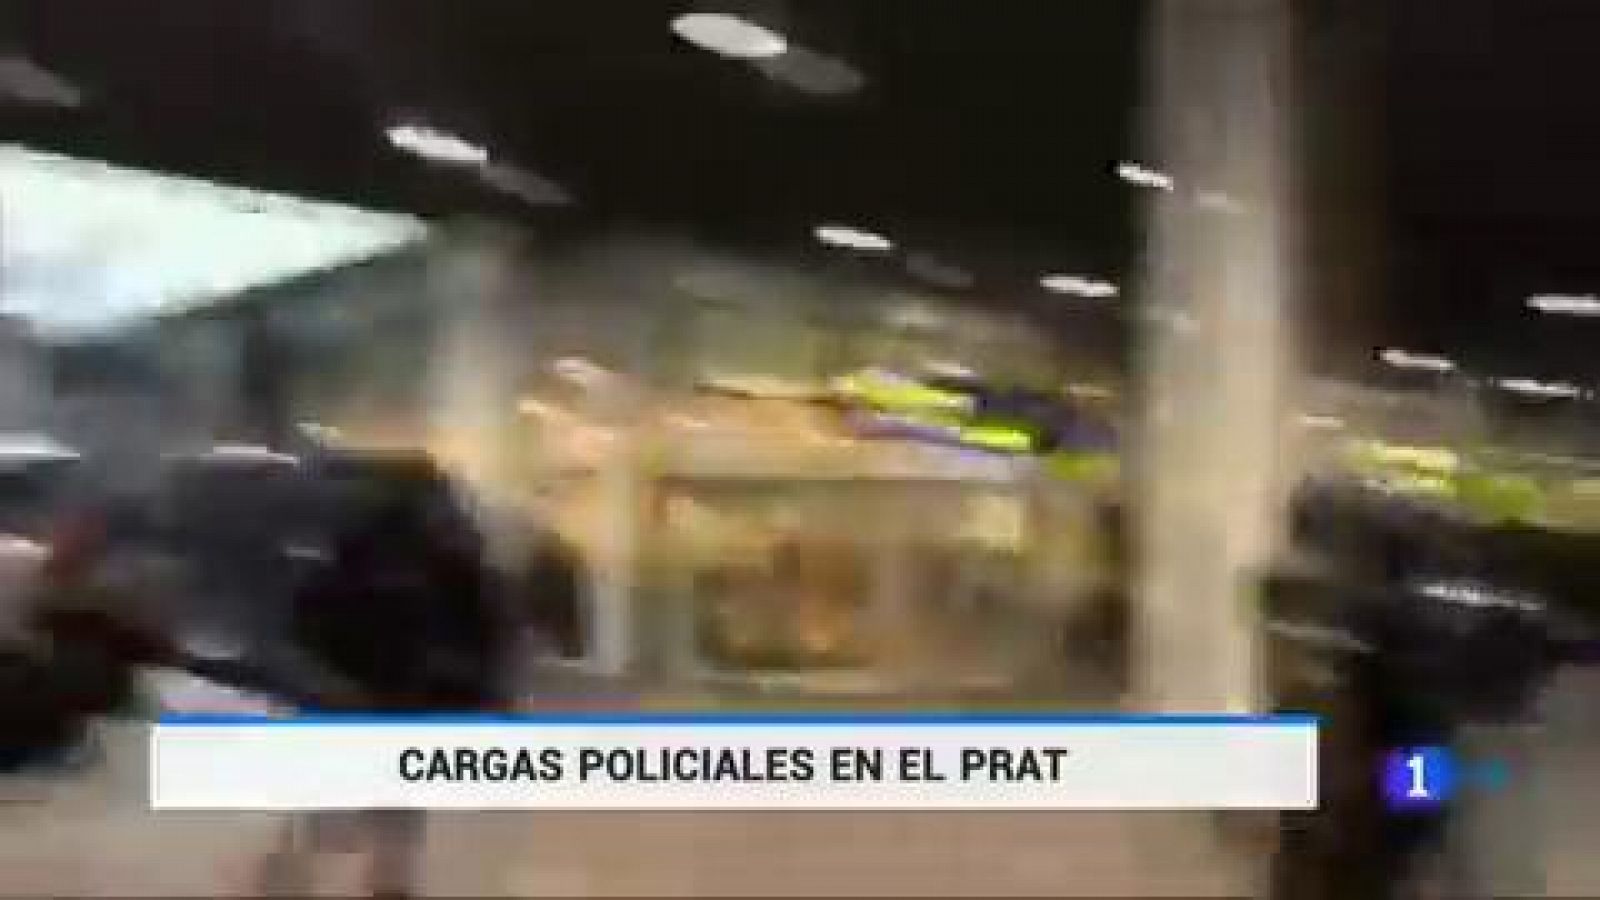 Sentencia procés - Cargas policiales en el aeropuerto de El Prat